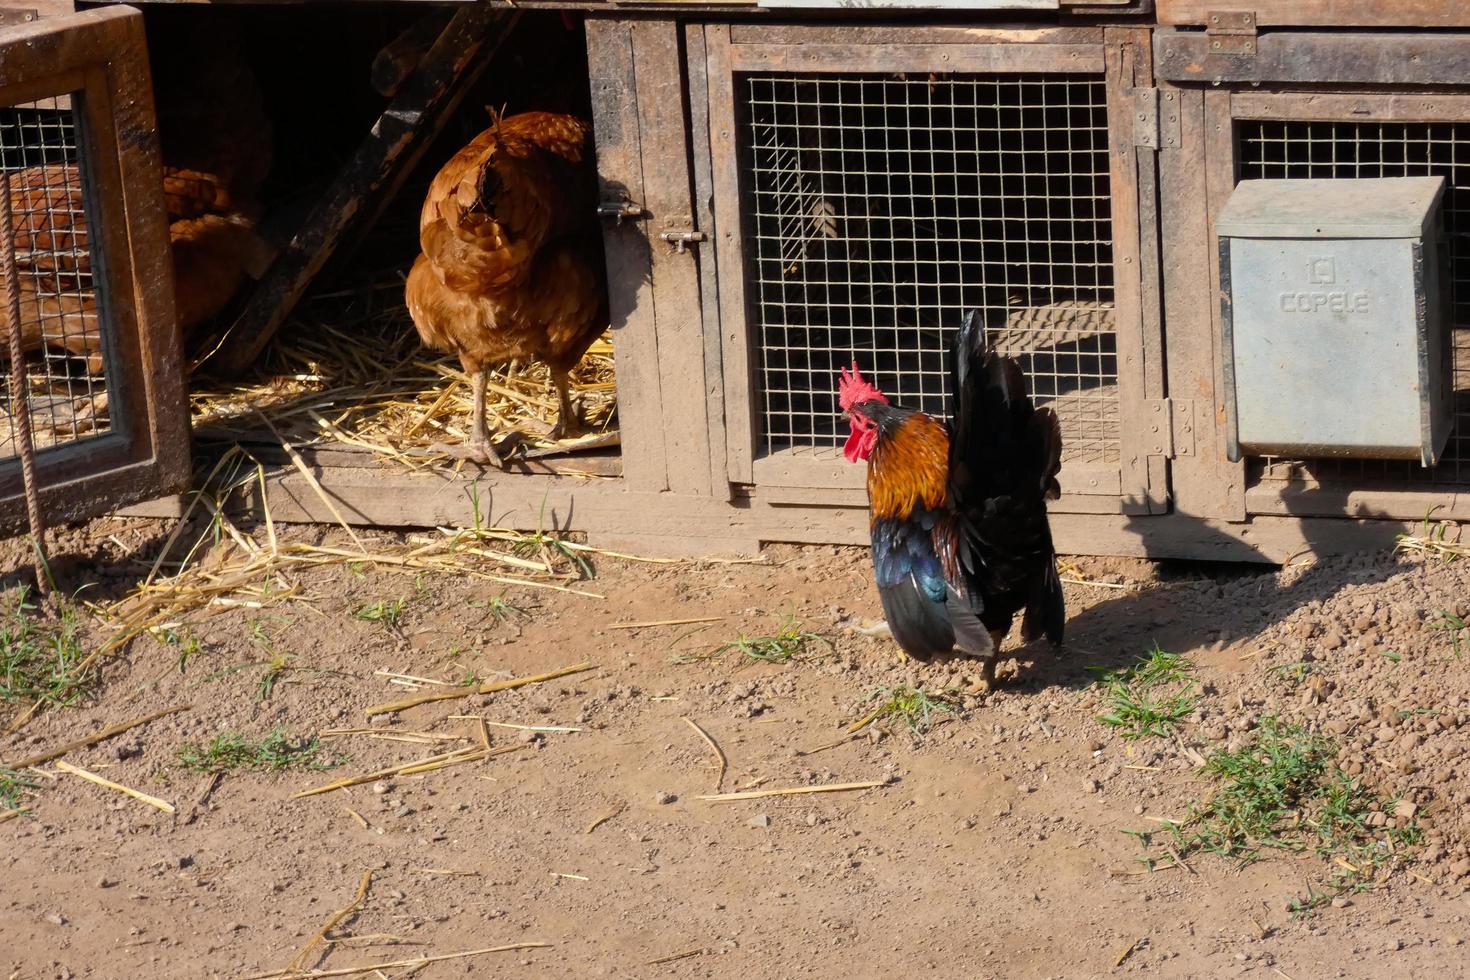 kippen in semi-vrijheid aan het eten van de grond foto